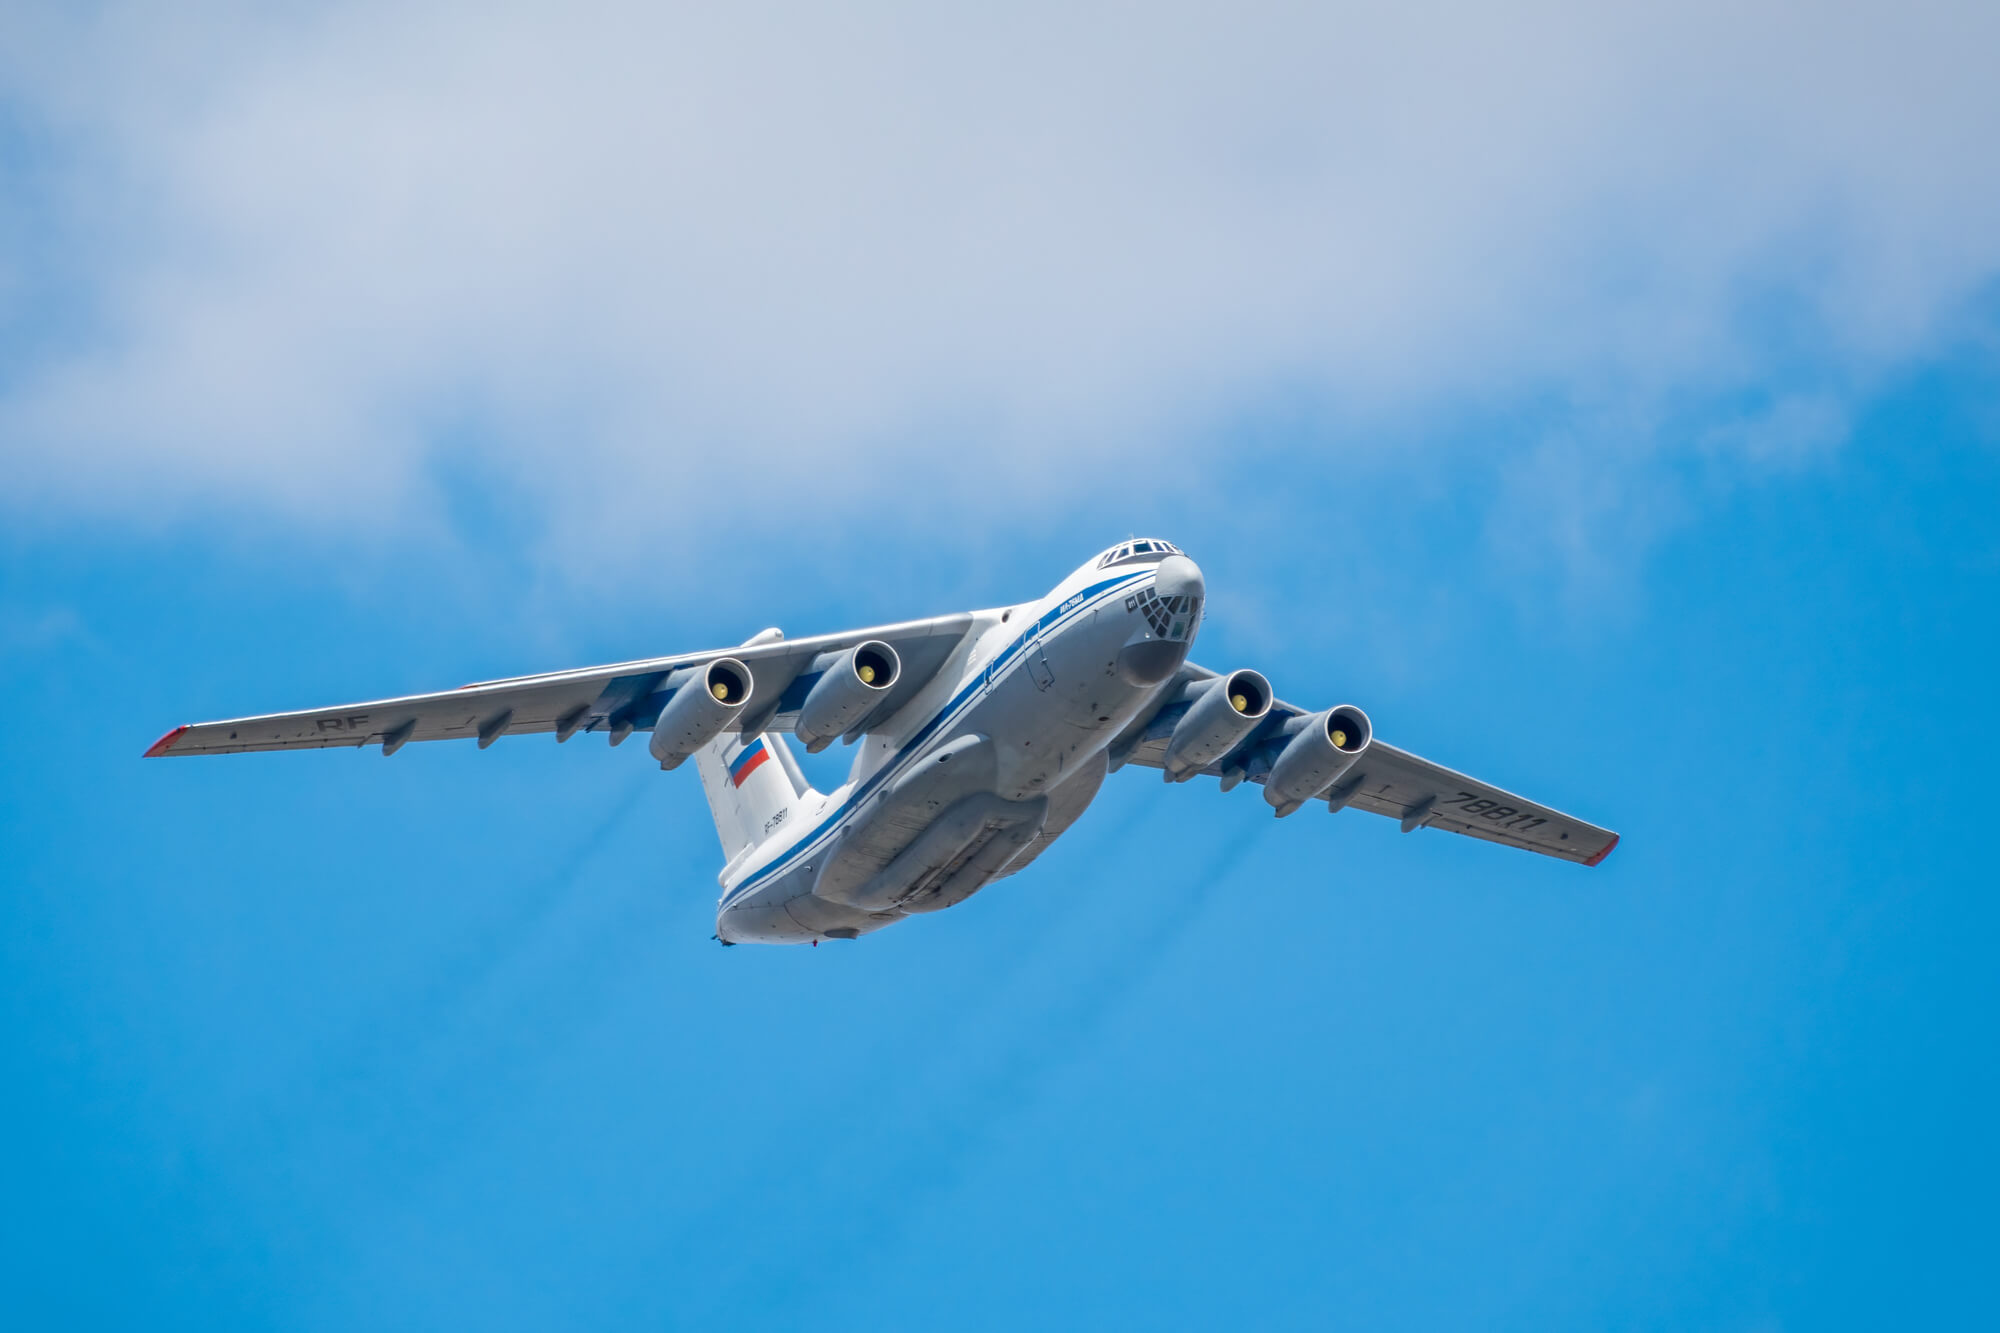  Έγκλημα πολέμου: Οι Ουκρανοί κατέρριψαν στο Μπέλγκοροντ Il-76 με 76 επιβάτες αλλά… μετέφερε Ουκρανούς αιχμαλώτους!